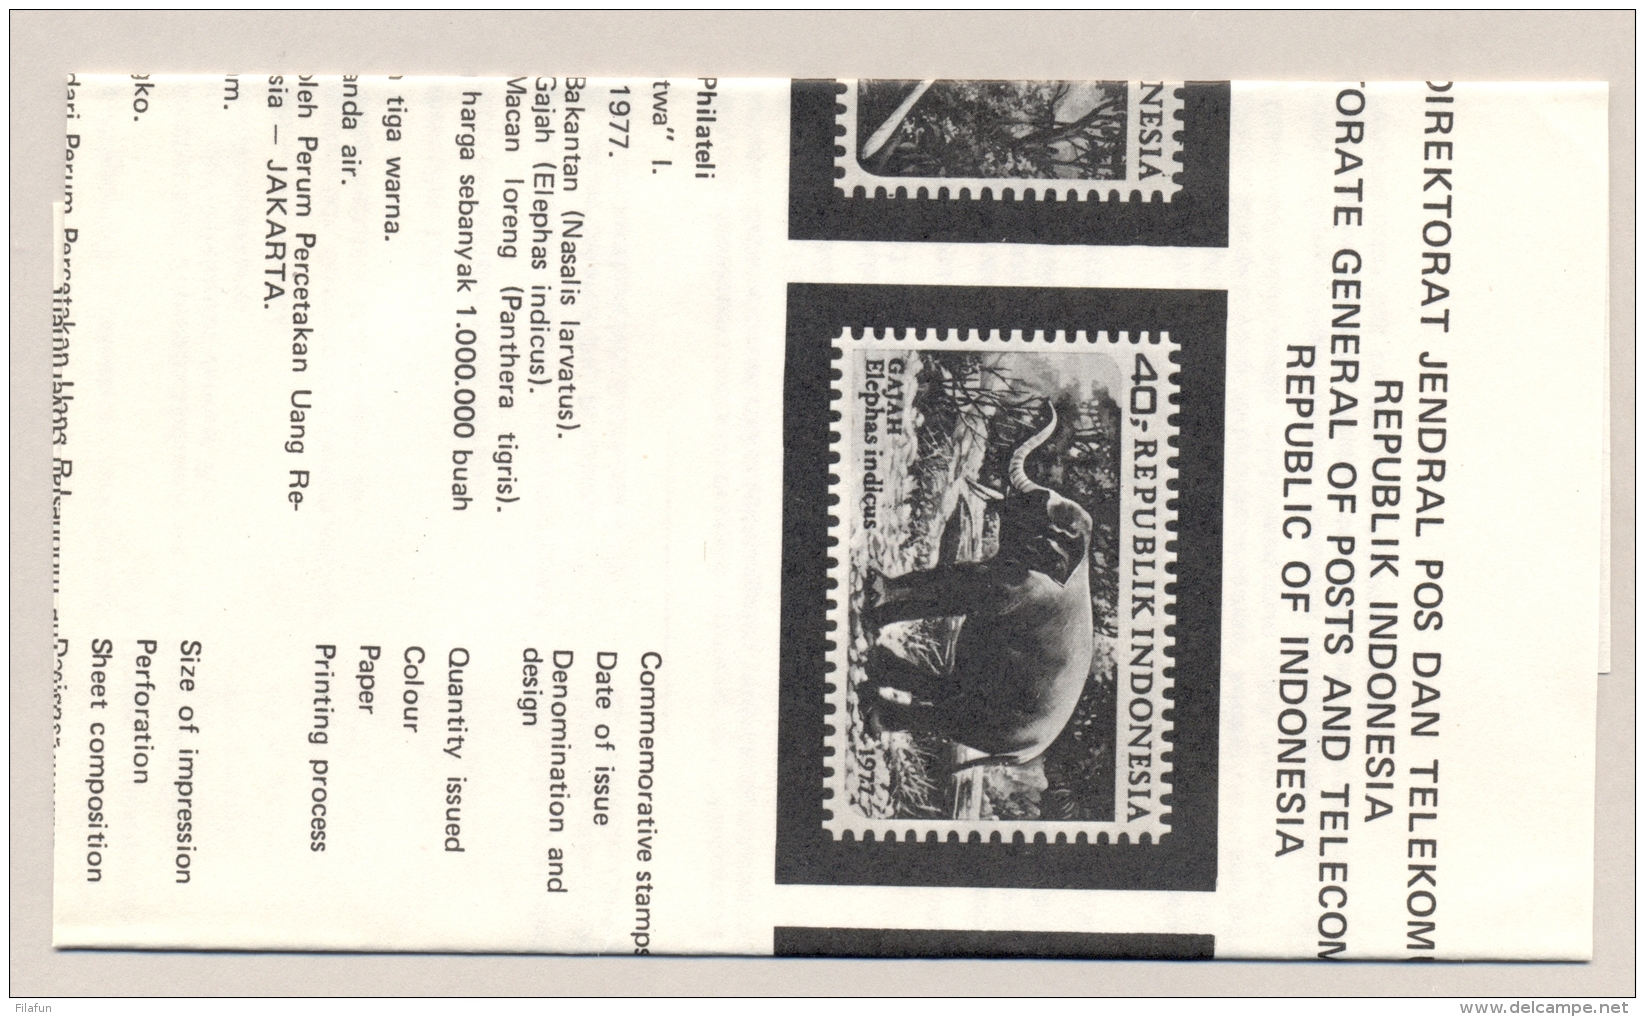 Indonesia - 1977 - Wild Life - FDC - No Address - Tiger, Elephant, Monkey - Indonesië